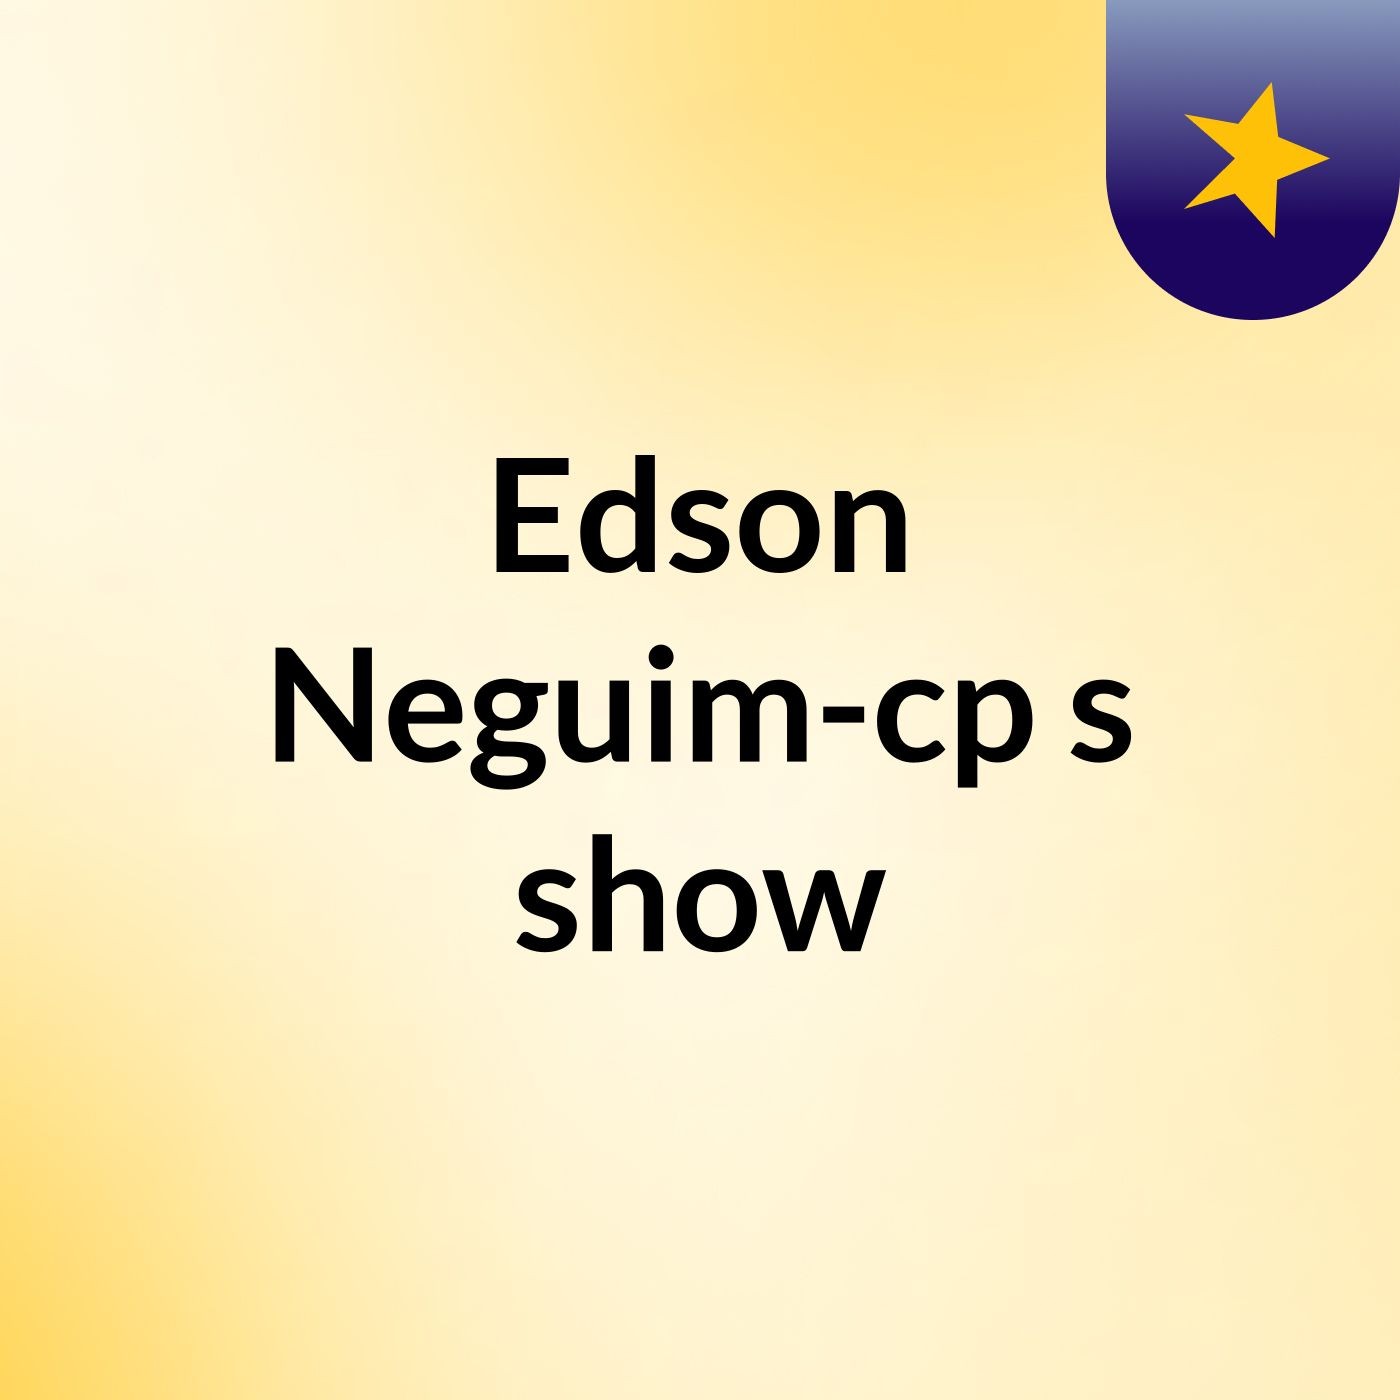 Edson Neguim-cp's show